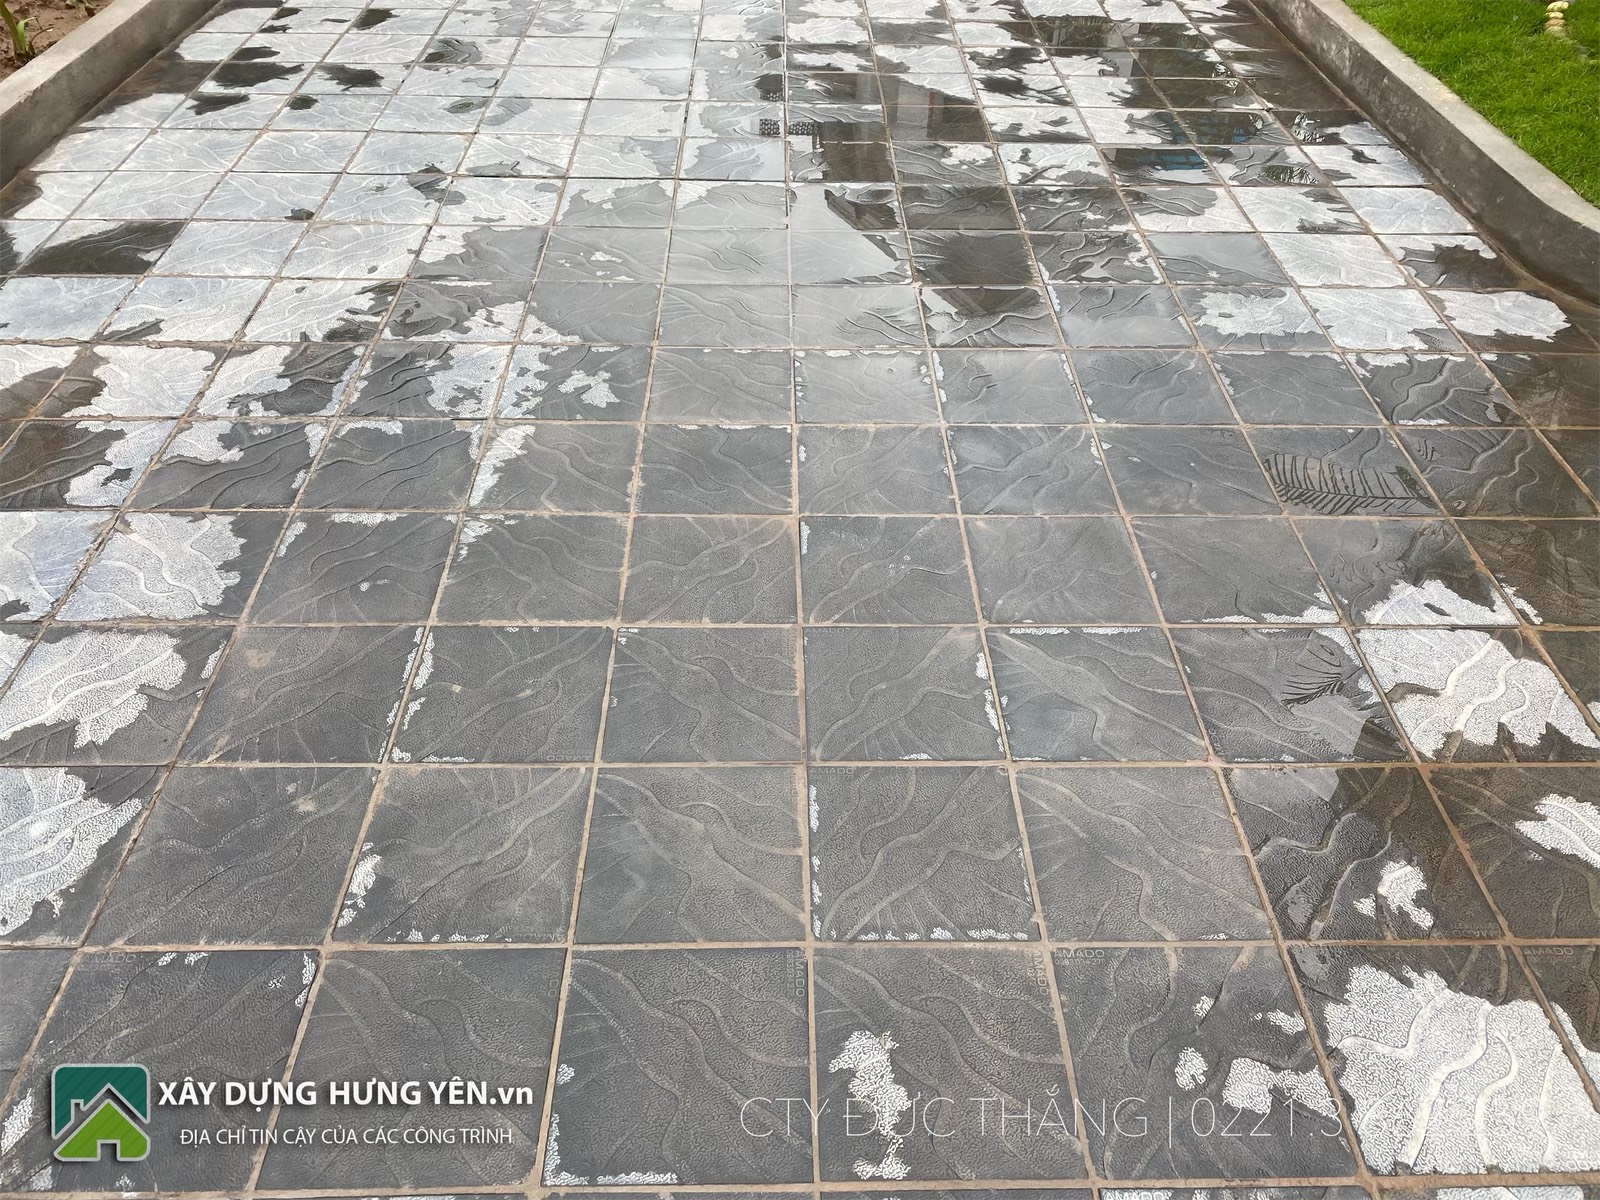 Biệt thự 2 tầng tại thành phố Hưng Yên sử dụng gạch lát sân vườn giả đá coric 300x300x50